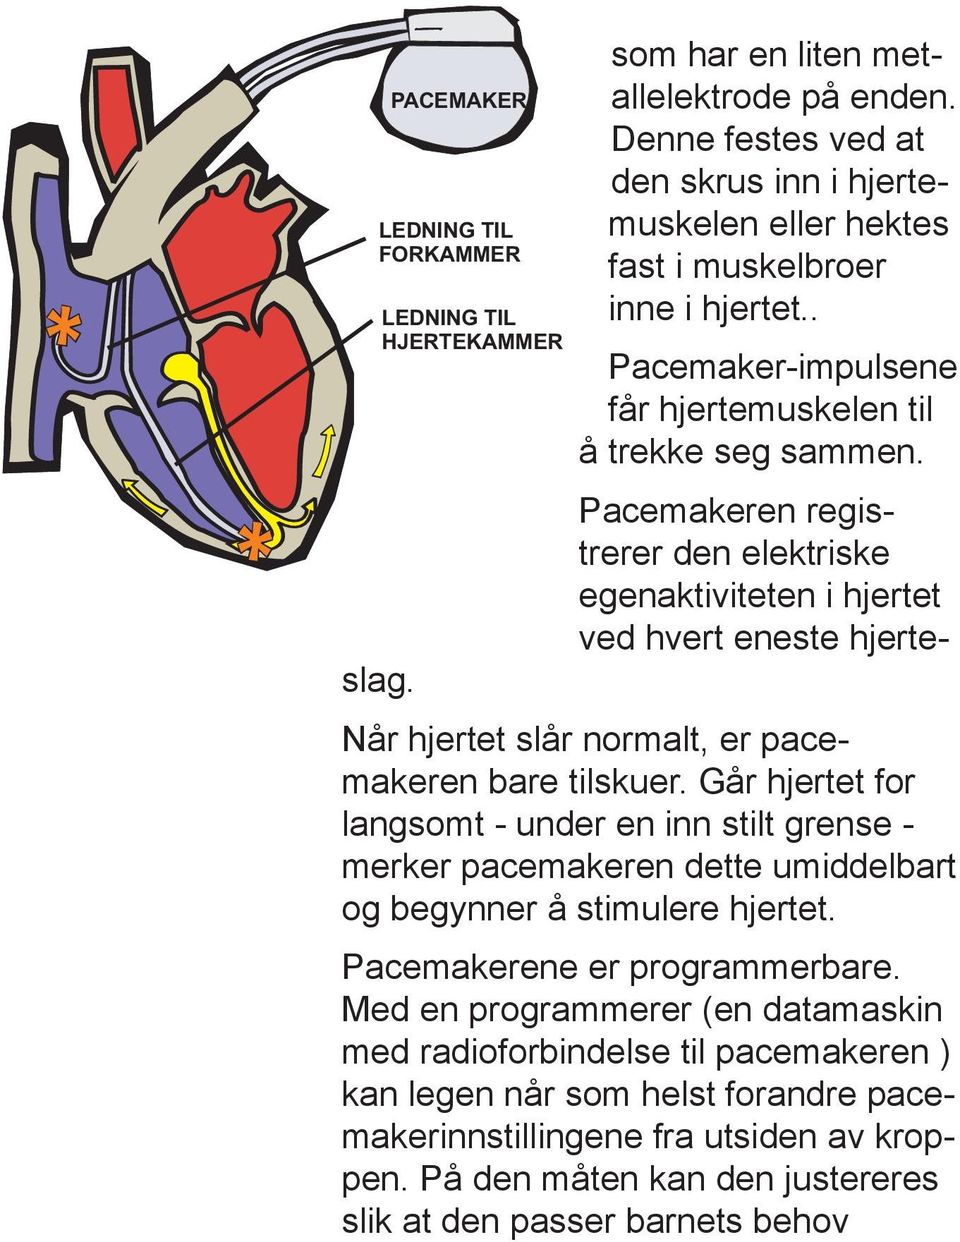 Pacemakeren registrerer den elektriske egenaktiviteten i hjertet ved hvert eneste hjerte Når hjertet slår normalt, er pacemakeren bare tilskuer.